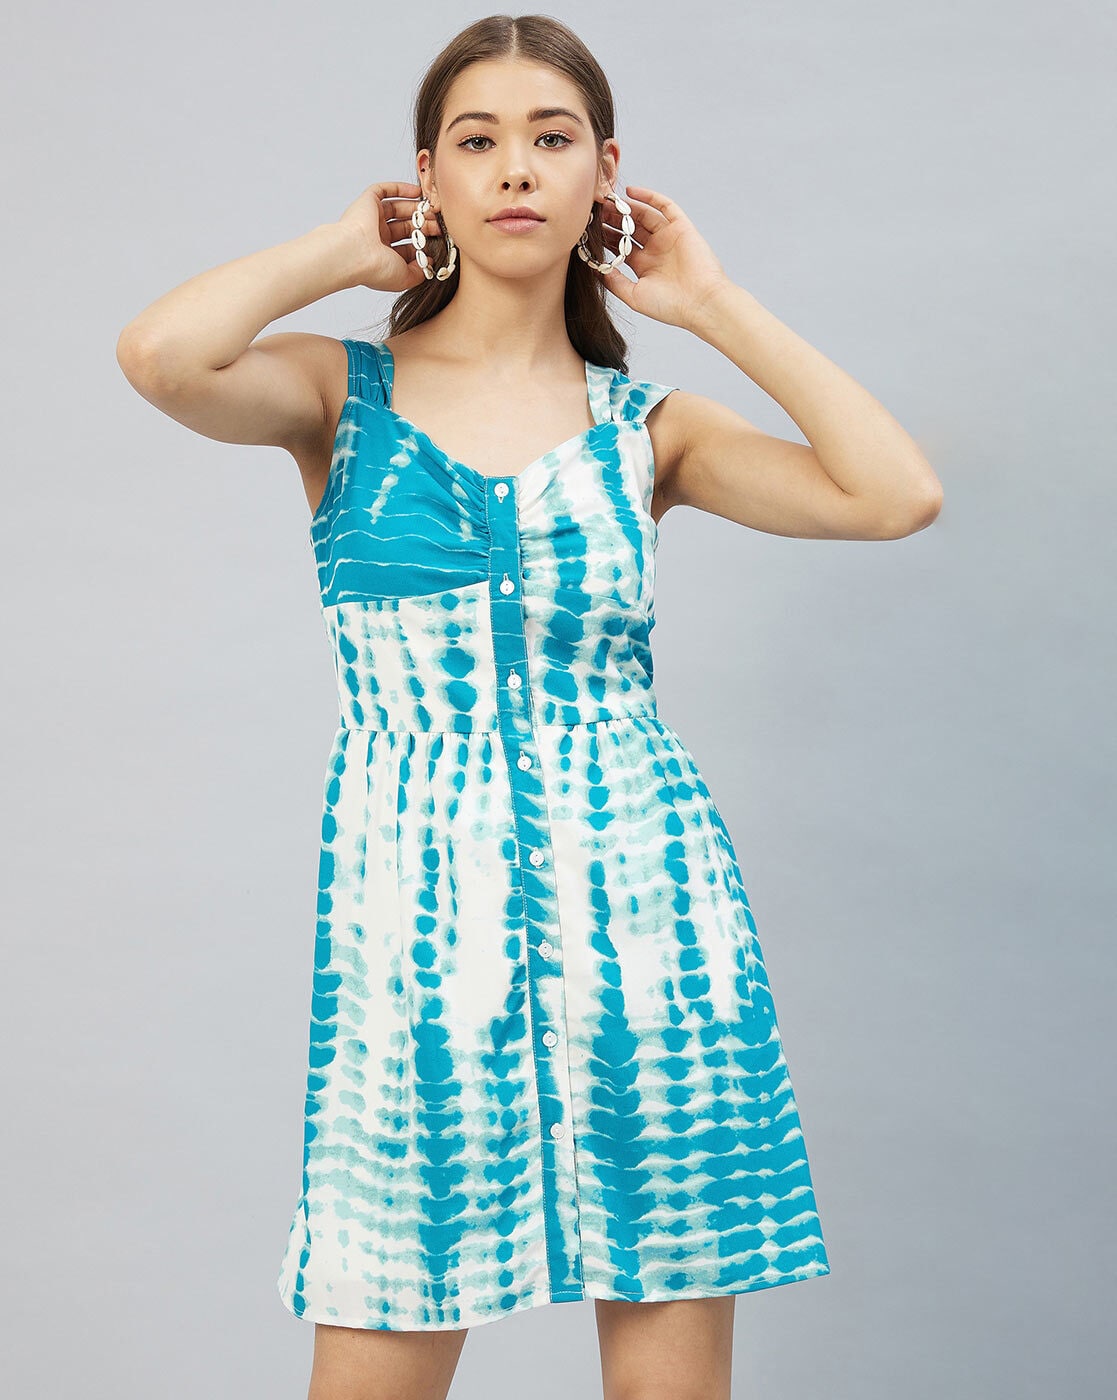 blue & white tie dye dress | Clothes for women, Fashion, Sleeveless mini  dress